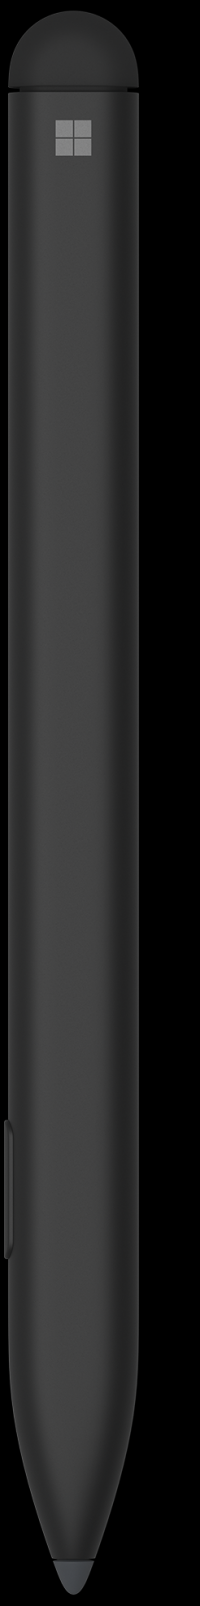 Surface Slim Pen for bedrifter